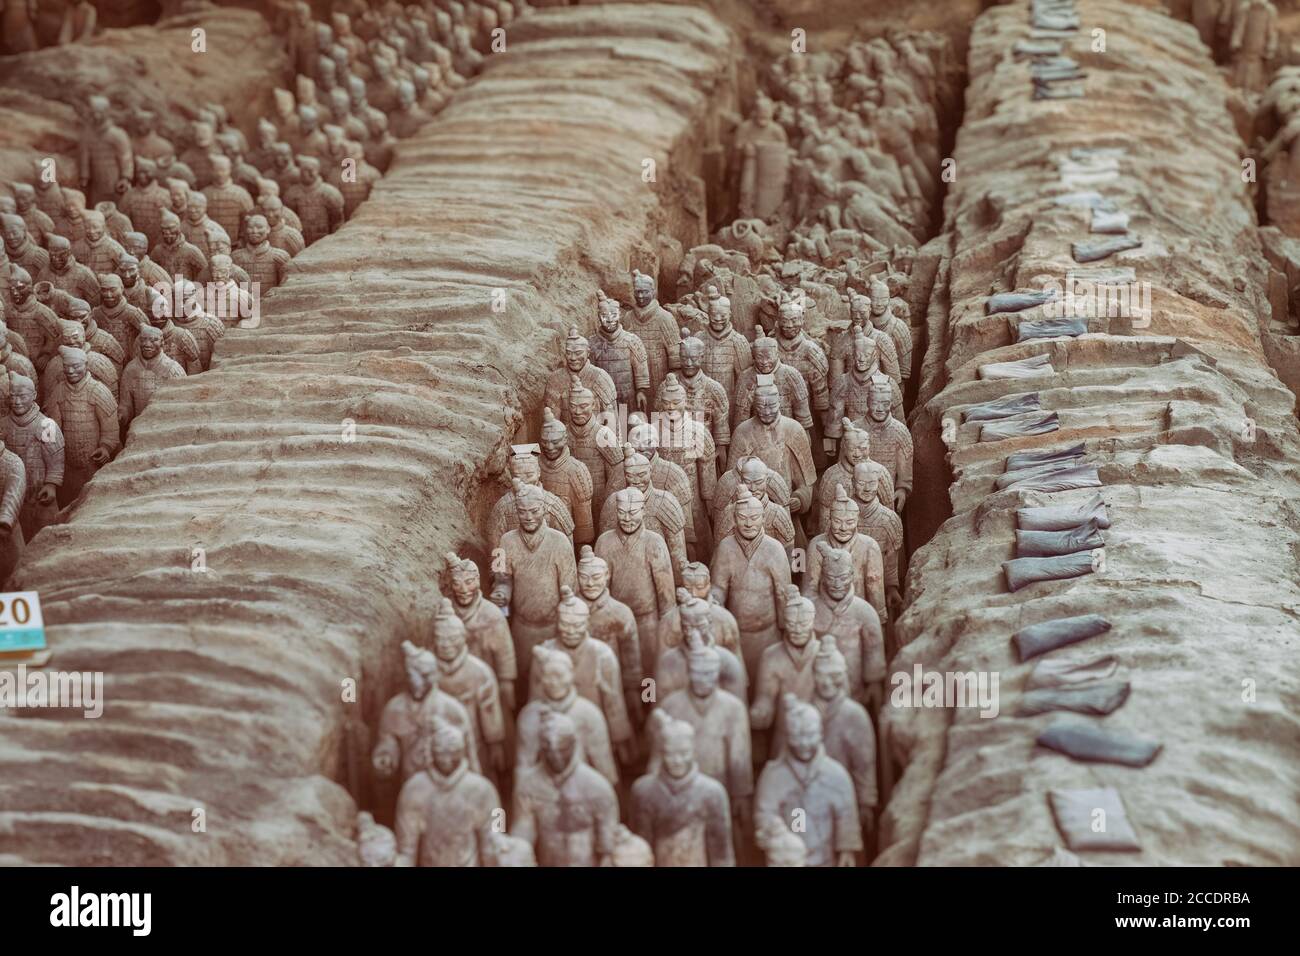 Photo des statues de l'armée de terre cuite en Chine Xian Banque D'Images